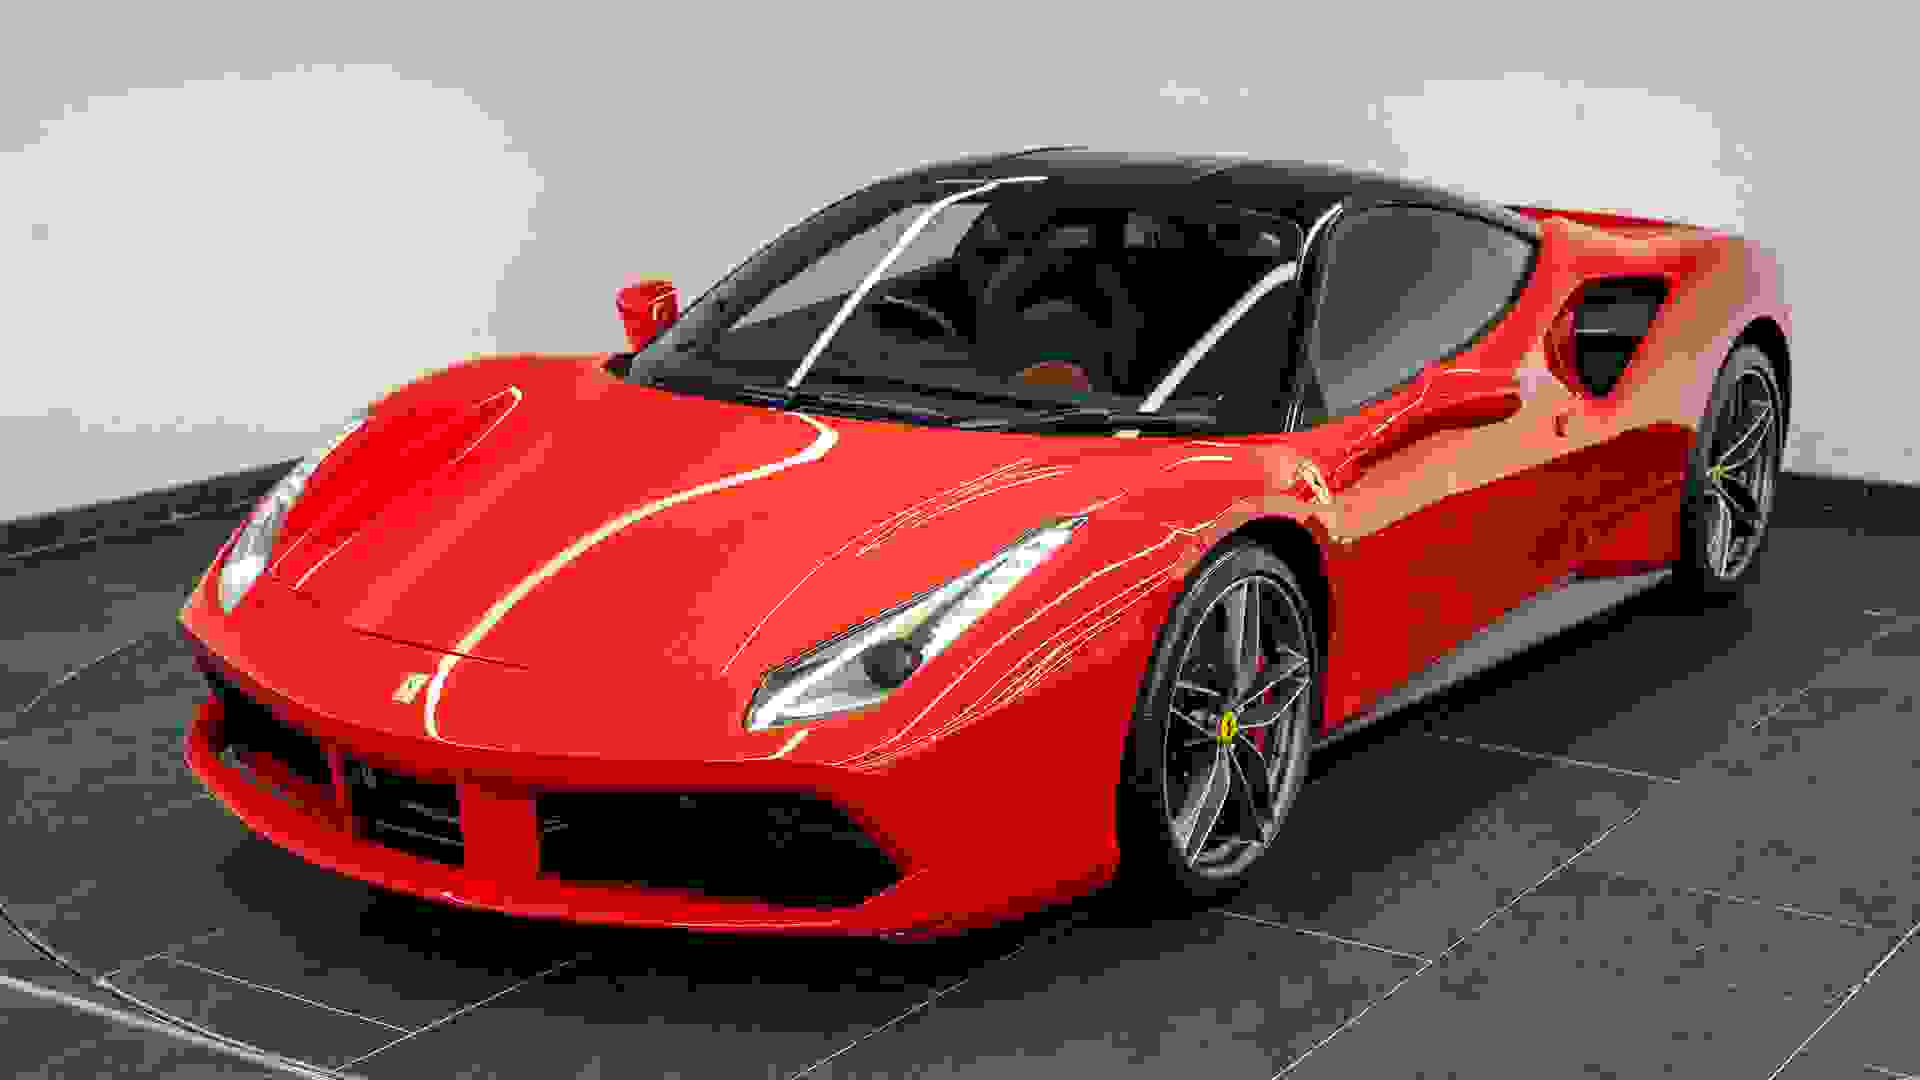 Ferrari 488 Photo e2d4b3fb-cf76-4137-a40b-9a8fb71bba8f.jpg